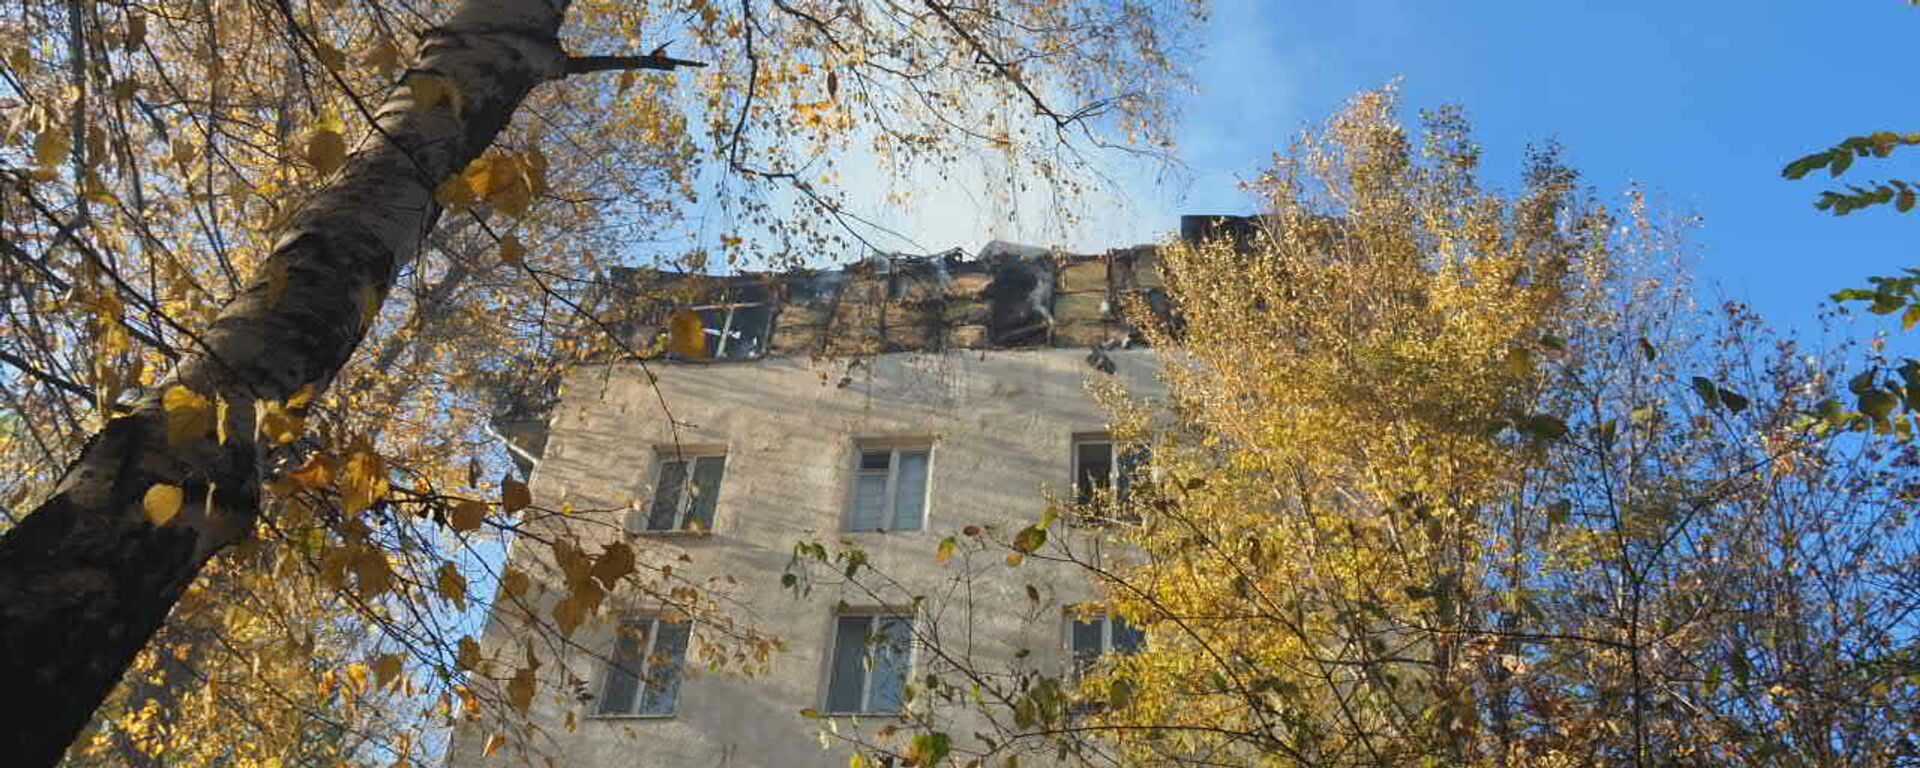 Пожар на мансарде по ул. Ион Пеливан 17/3 - Sputnik Молдова, 1920, 25.10.2021